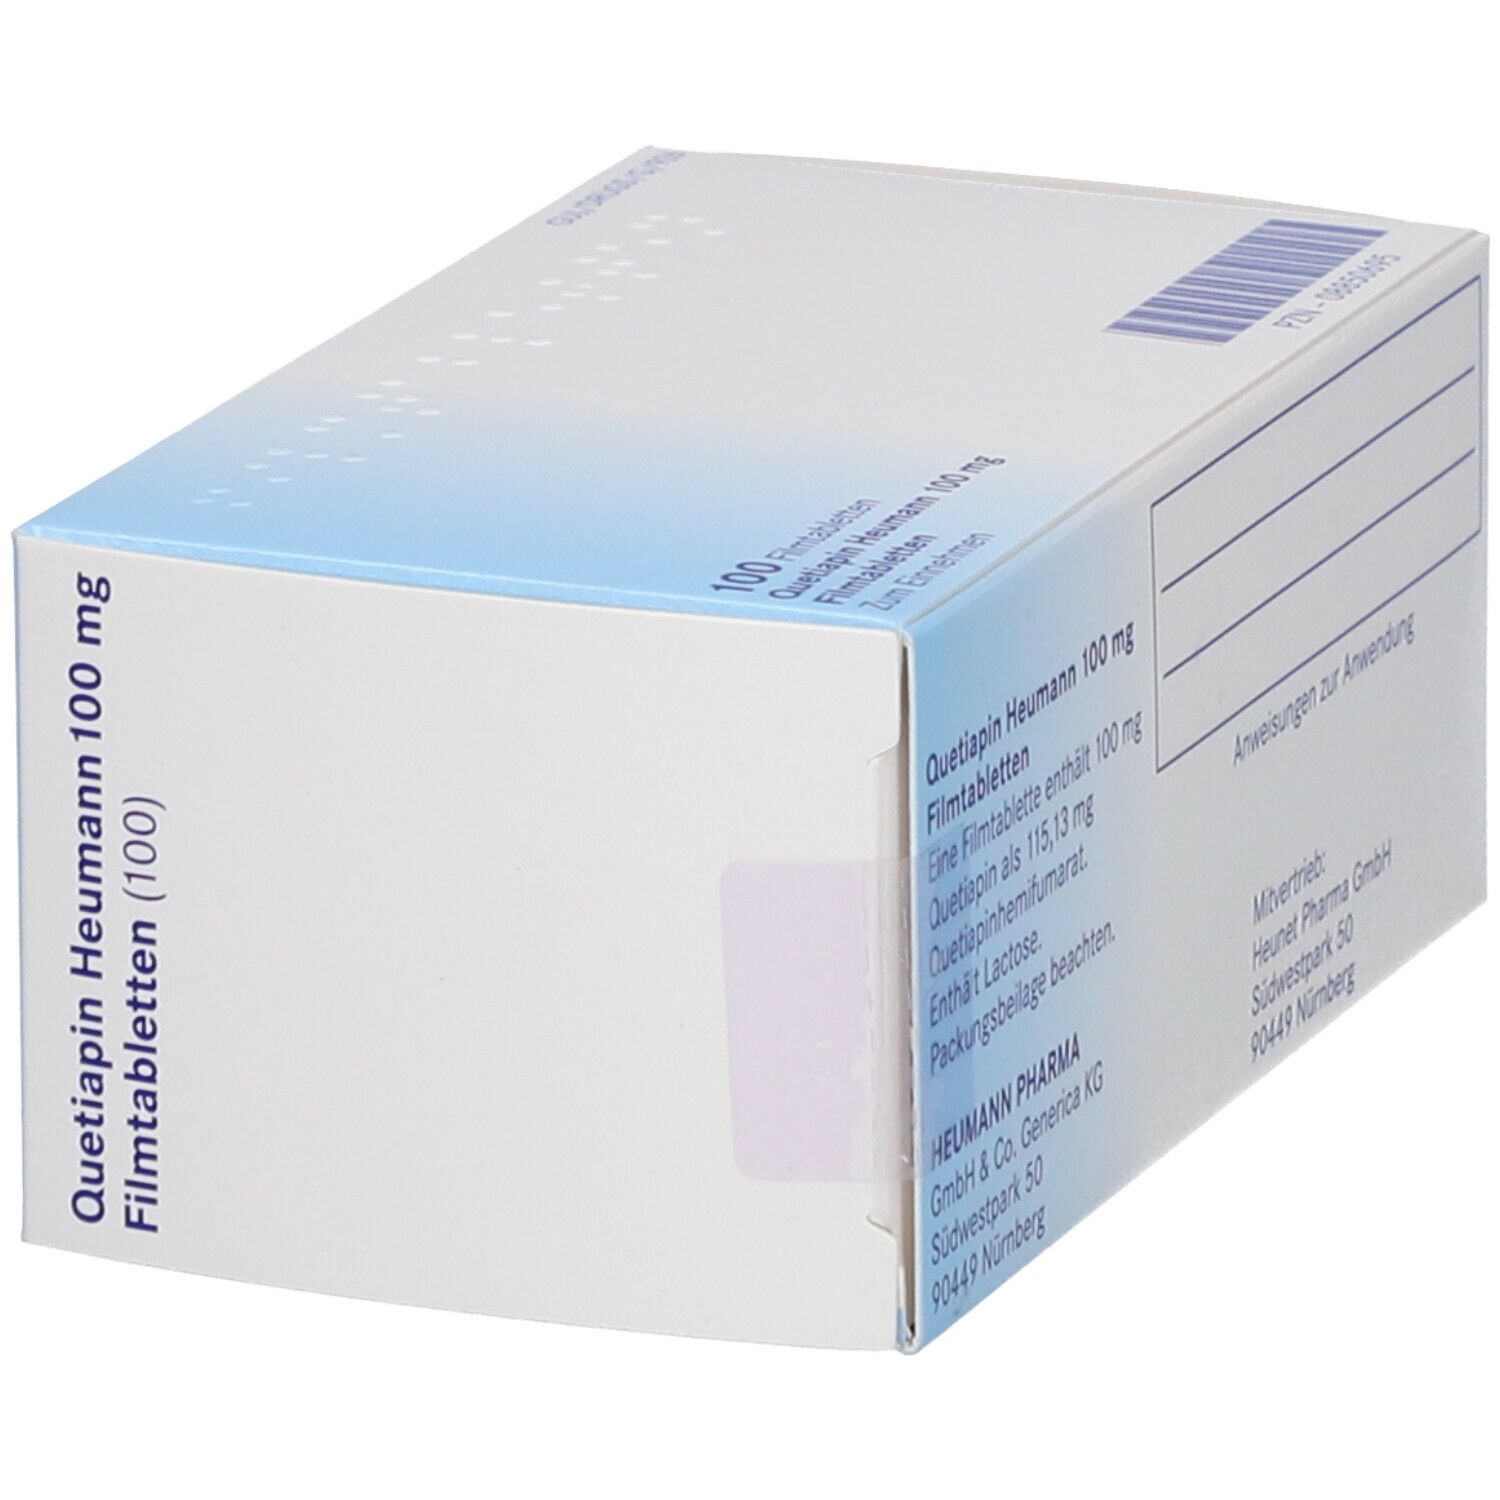 Quetiapin Heumann 100 mg